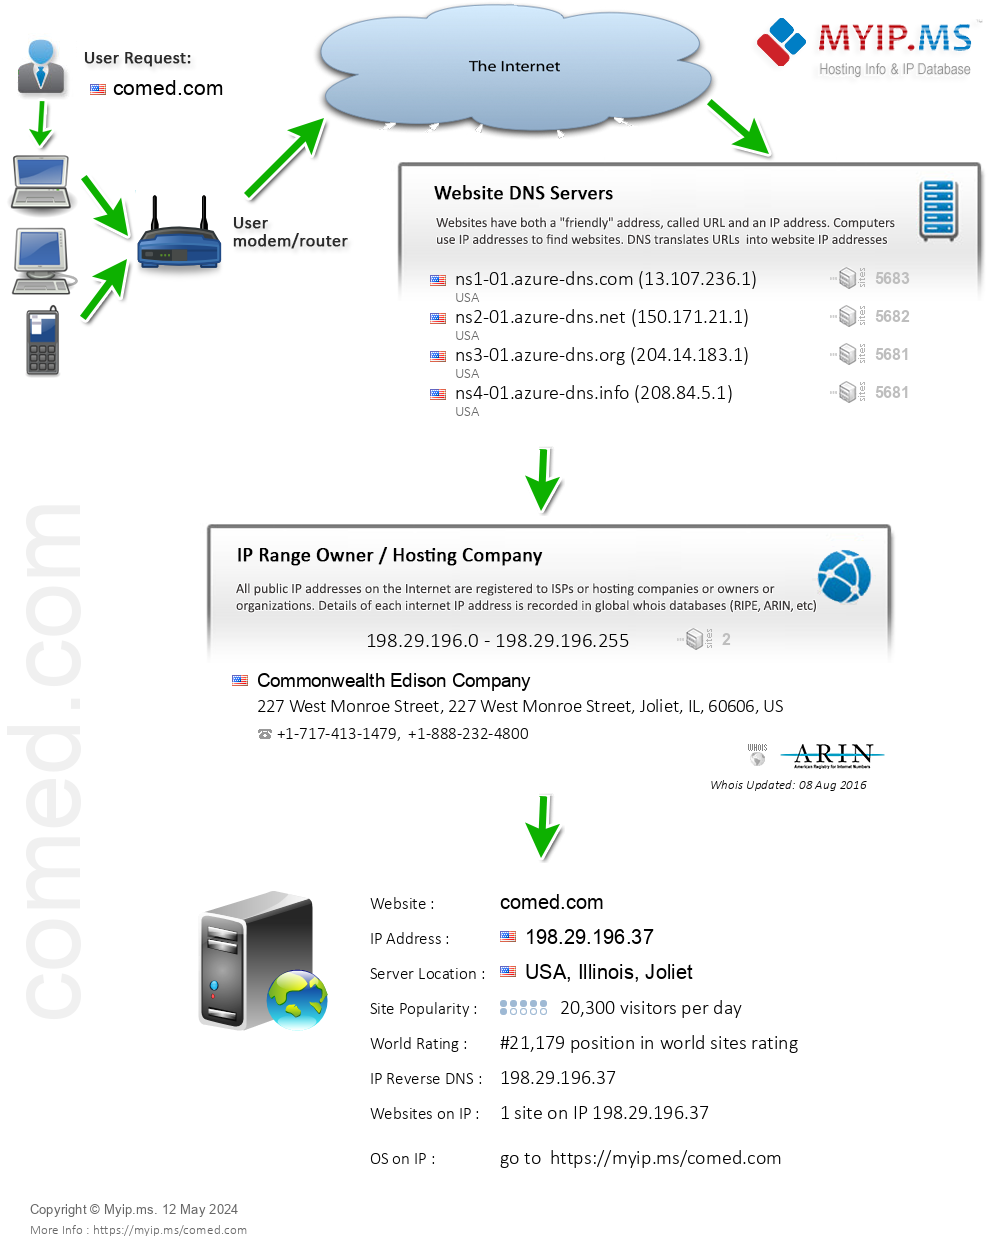 Comed.com - Website Hosting Visual IP Diagram